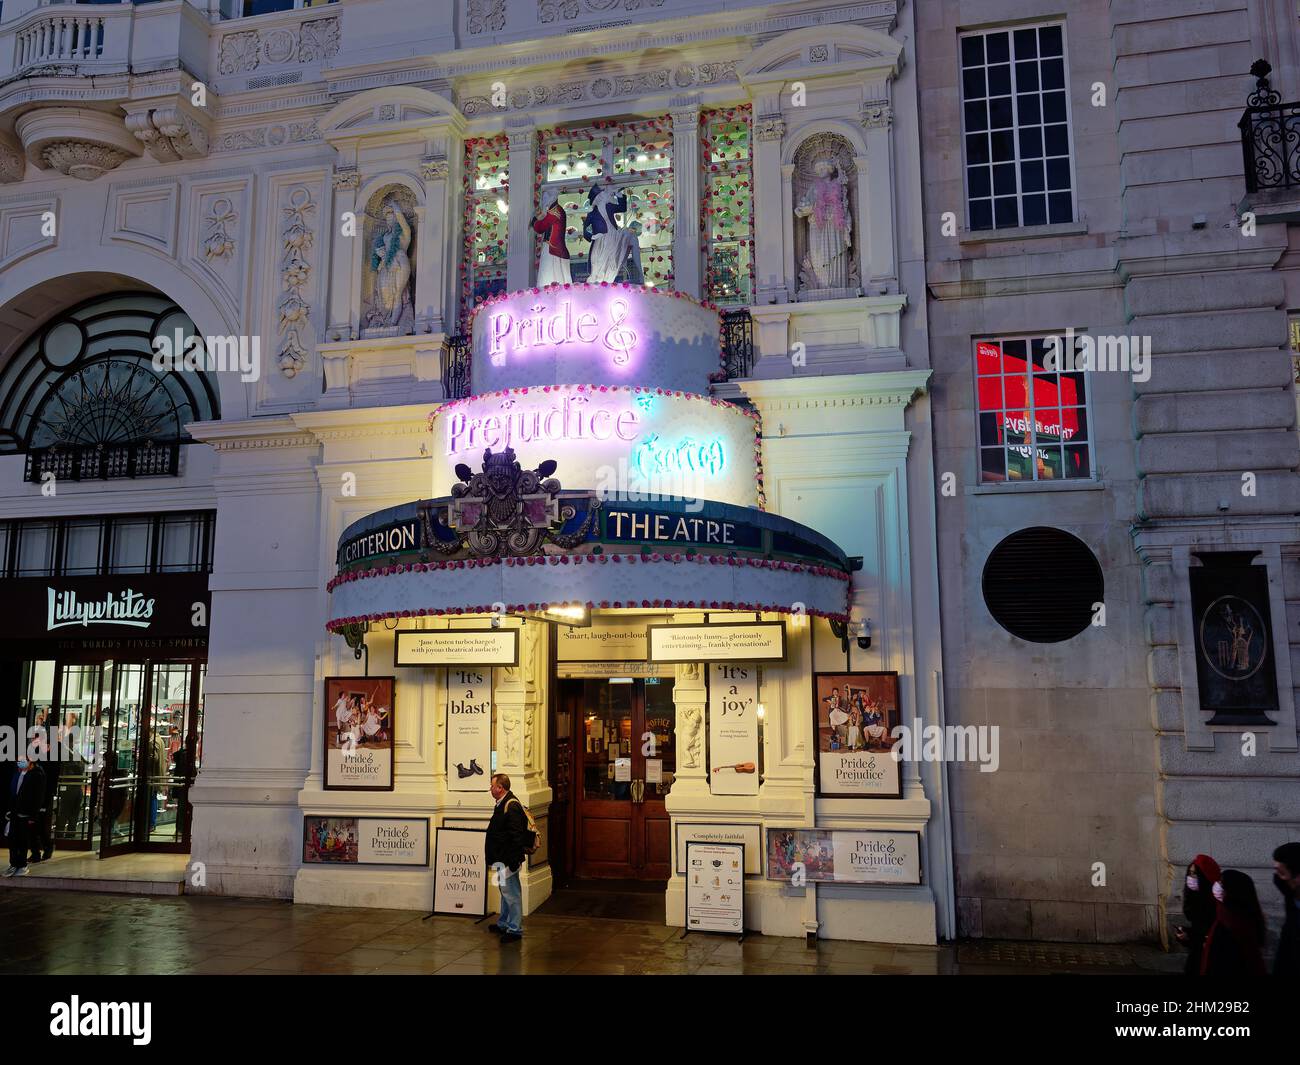 Vue de face la nuit de l'entrée du Criterion Theatre de Piccadilly Circus Londres montrant « About Pride & Prejum (sorte de) » Banque D'Images